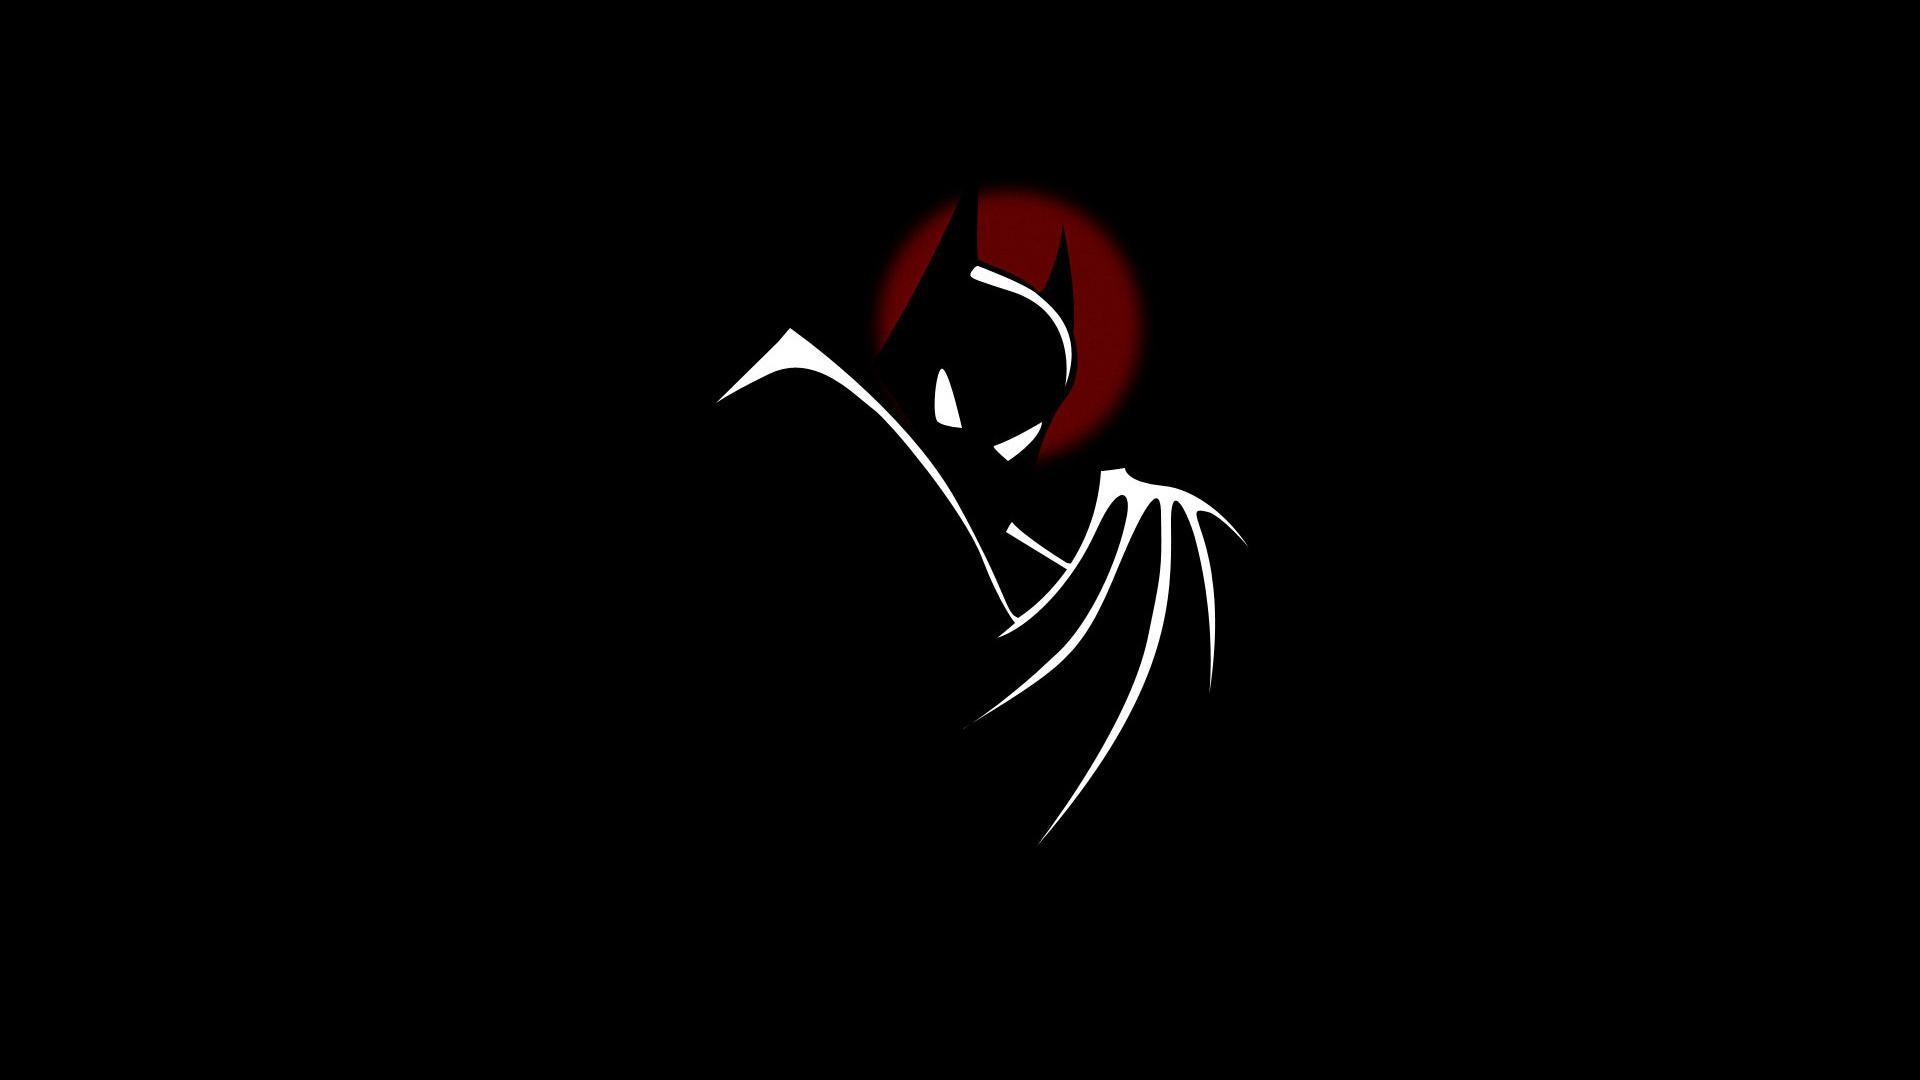 49 Batman Hd Wallpapers 1080p On Wallpapersafari - 